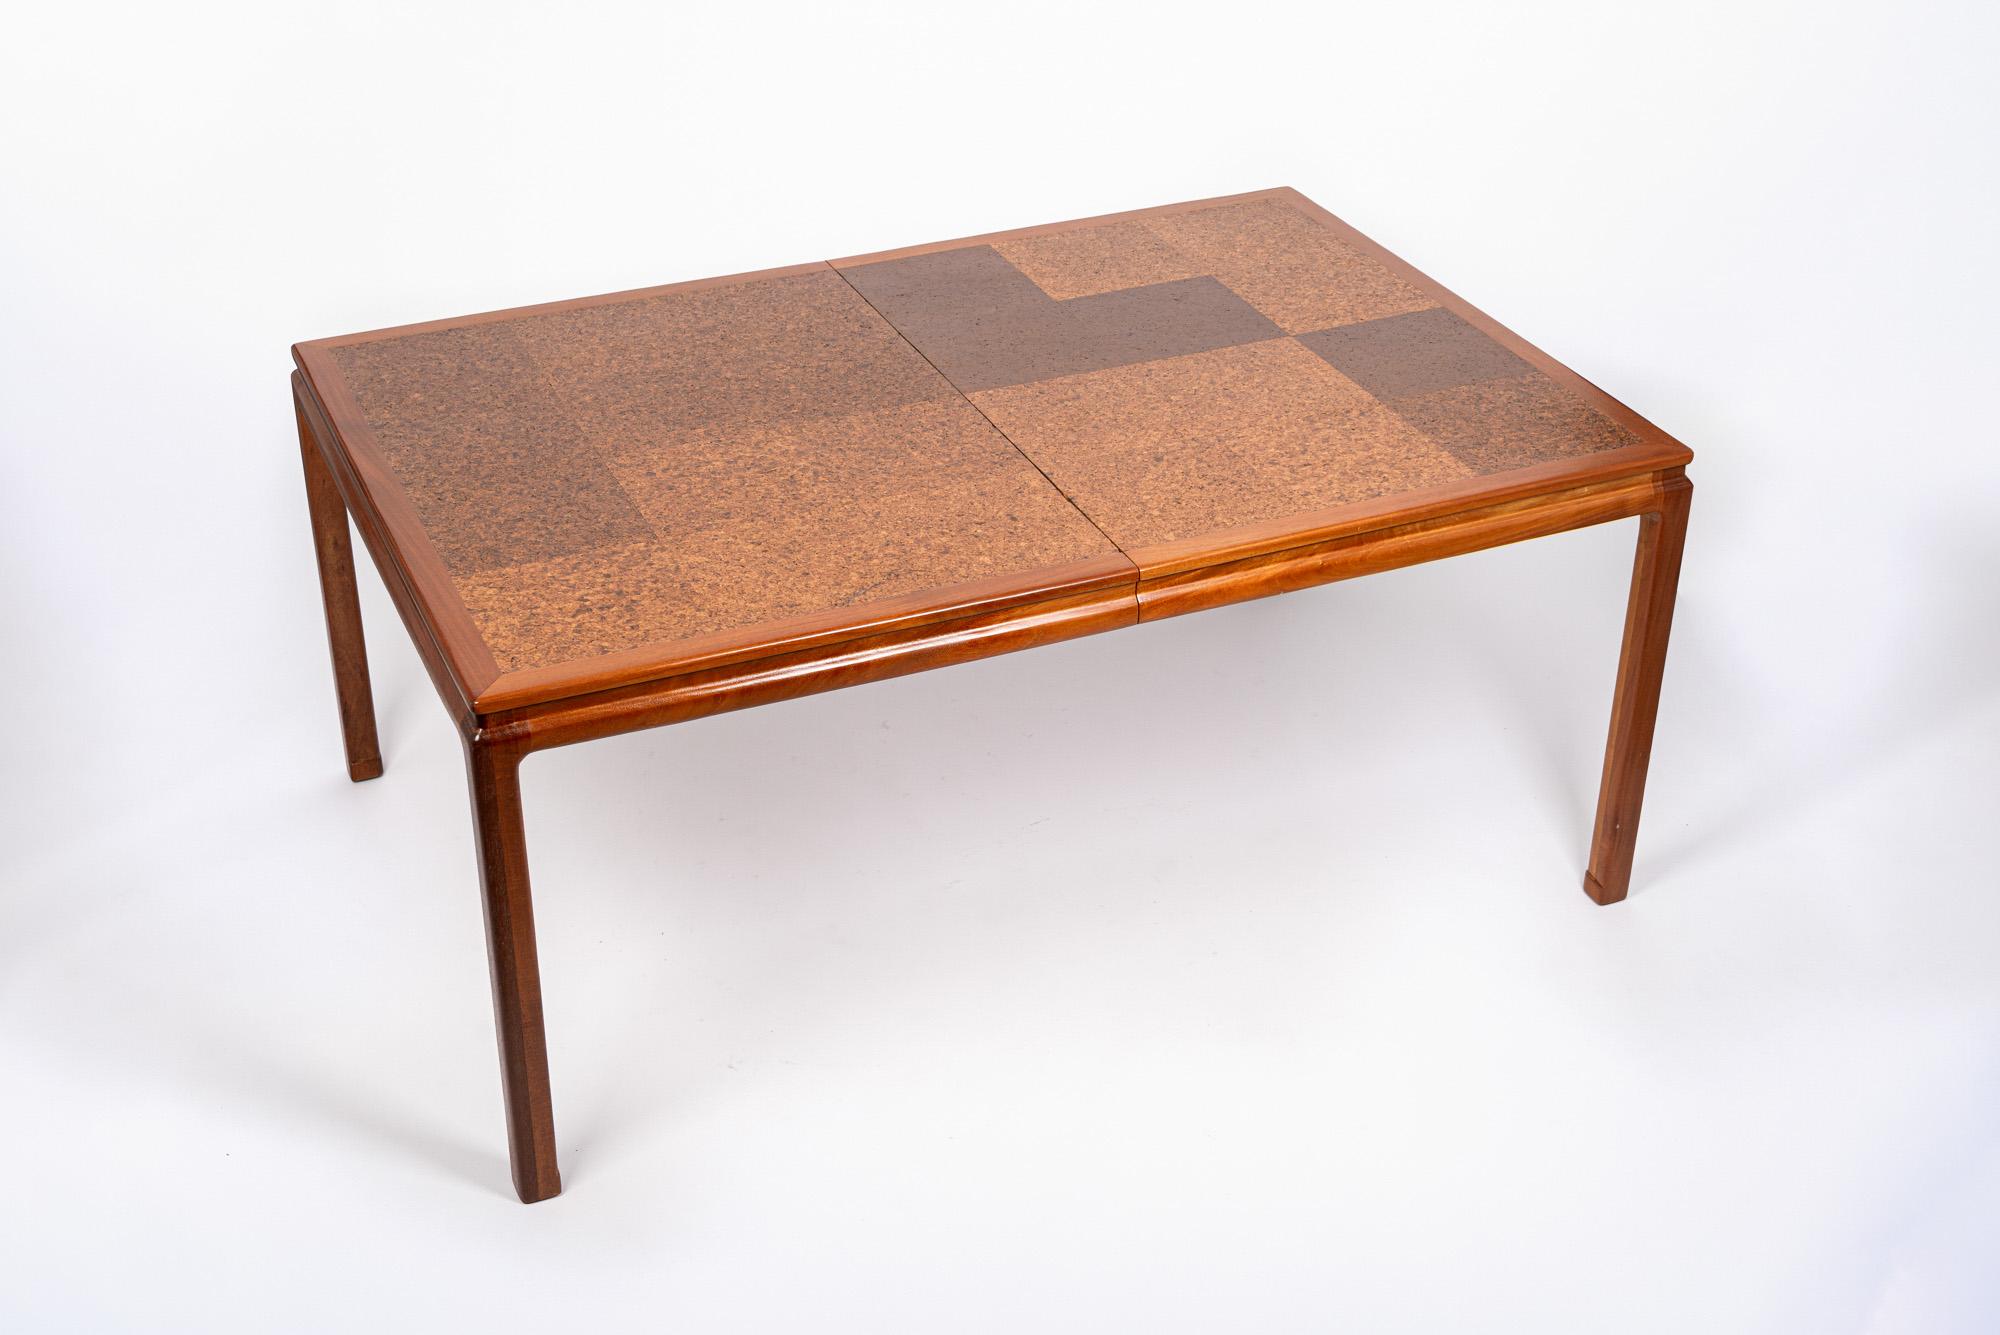 Cette table de salle à manger vintage du milieu du siècle a été conçue par Edward Wormley pour Dunbar vers 1960. Cette table exceptionnelle aux lignes épurées et minimalistes est fabriquée de manière experte en bois d'acajou et en liège, avec un